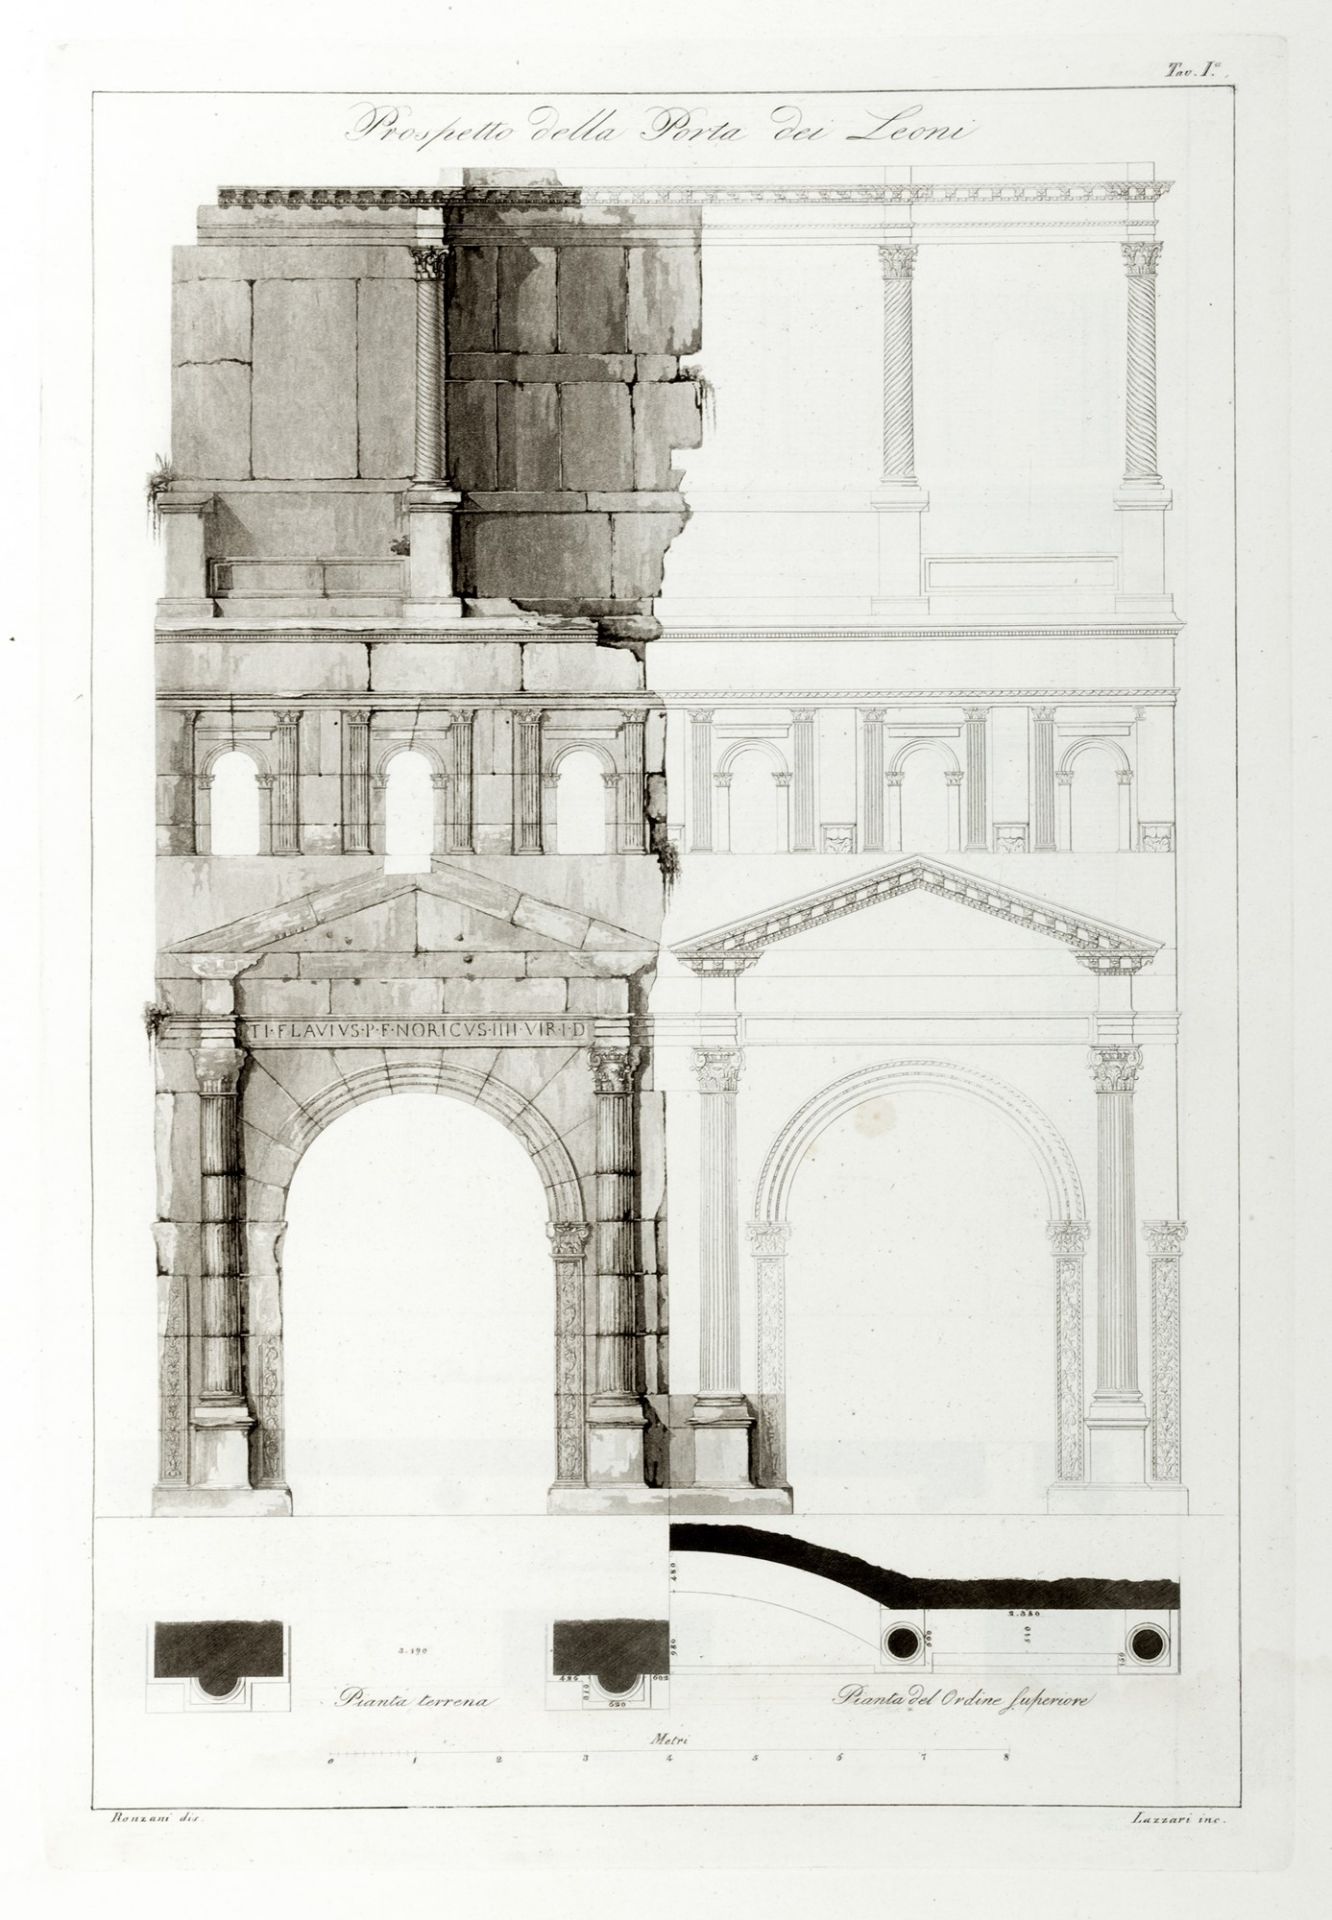 Verona - Architecture - Orti Manara, Giovanni Girolamo - Of the two gates called dei Leoni and dei B